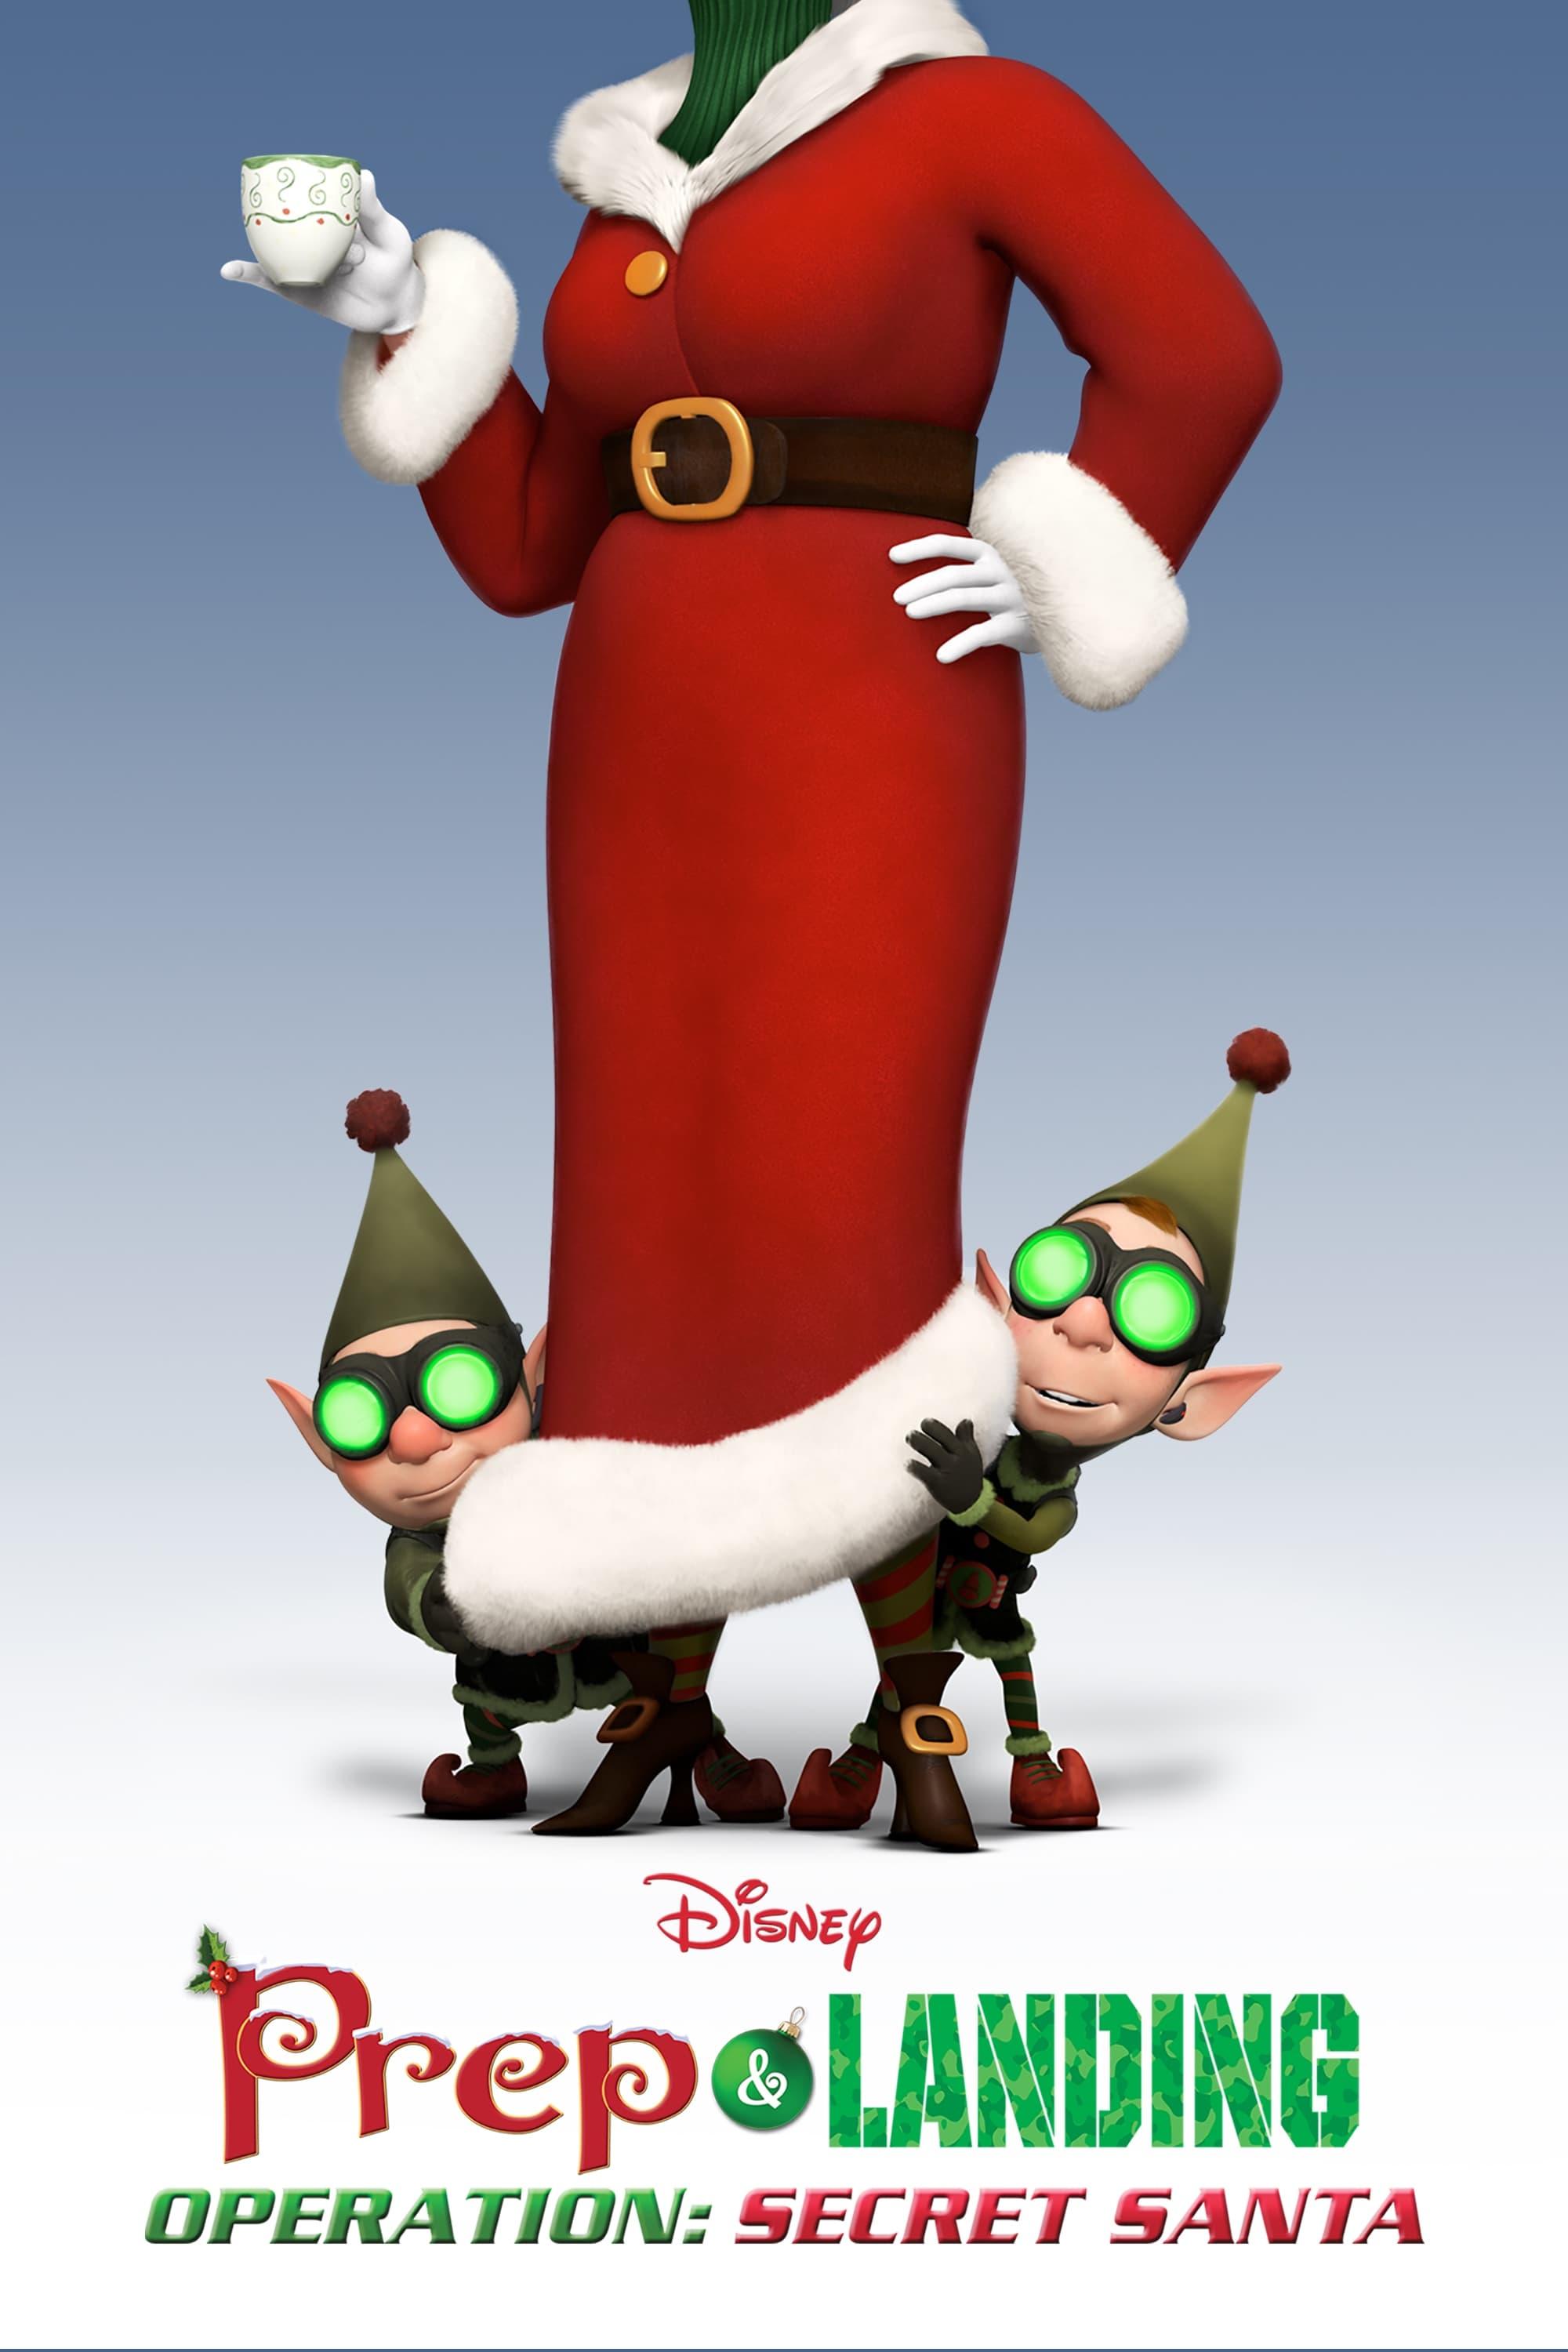 Elfen Helfen - Mission: Santa poster